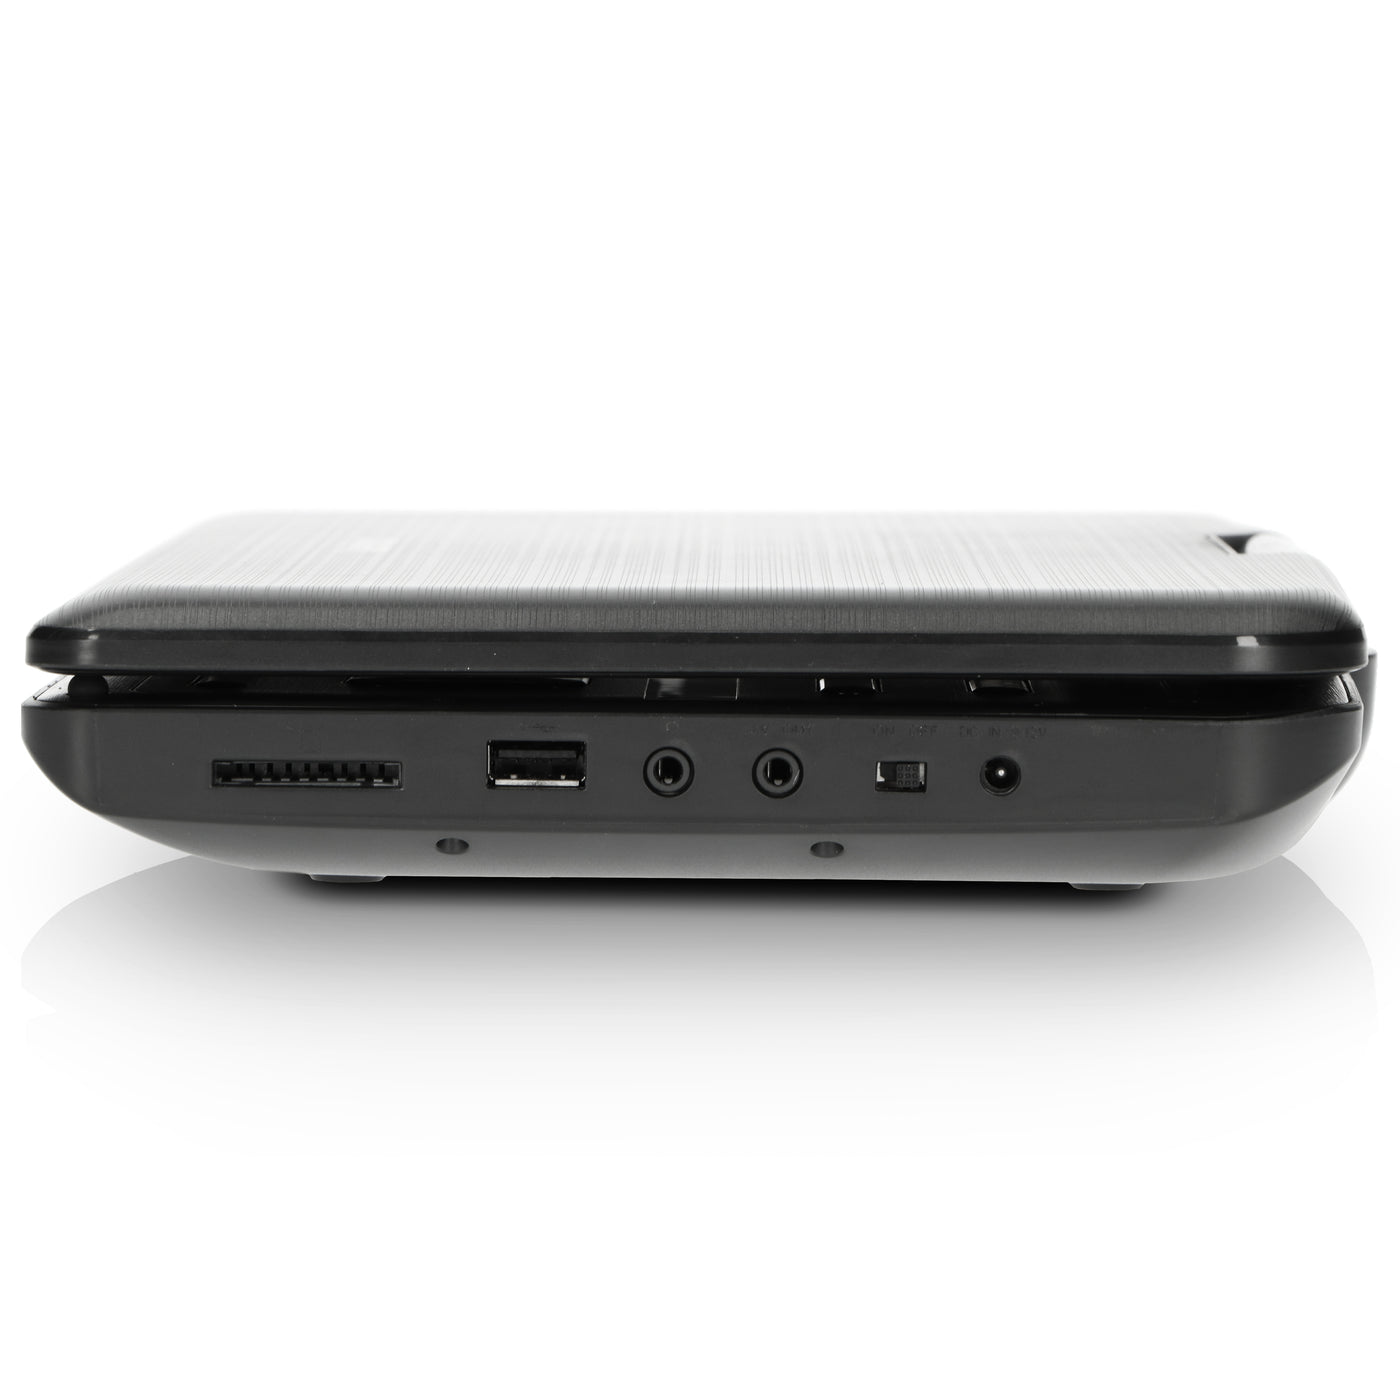 Lenco DVP-1046BK - Deux lecteurs DVD portables de 10 pouces avec batterie rechargeable, deux casques et deux supports de montage pour la voiture - Noir